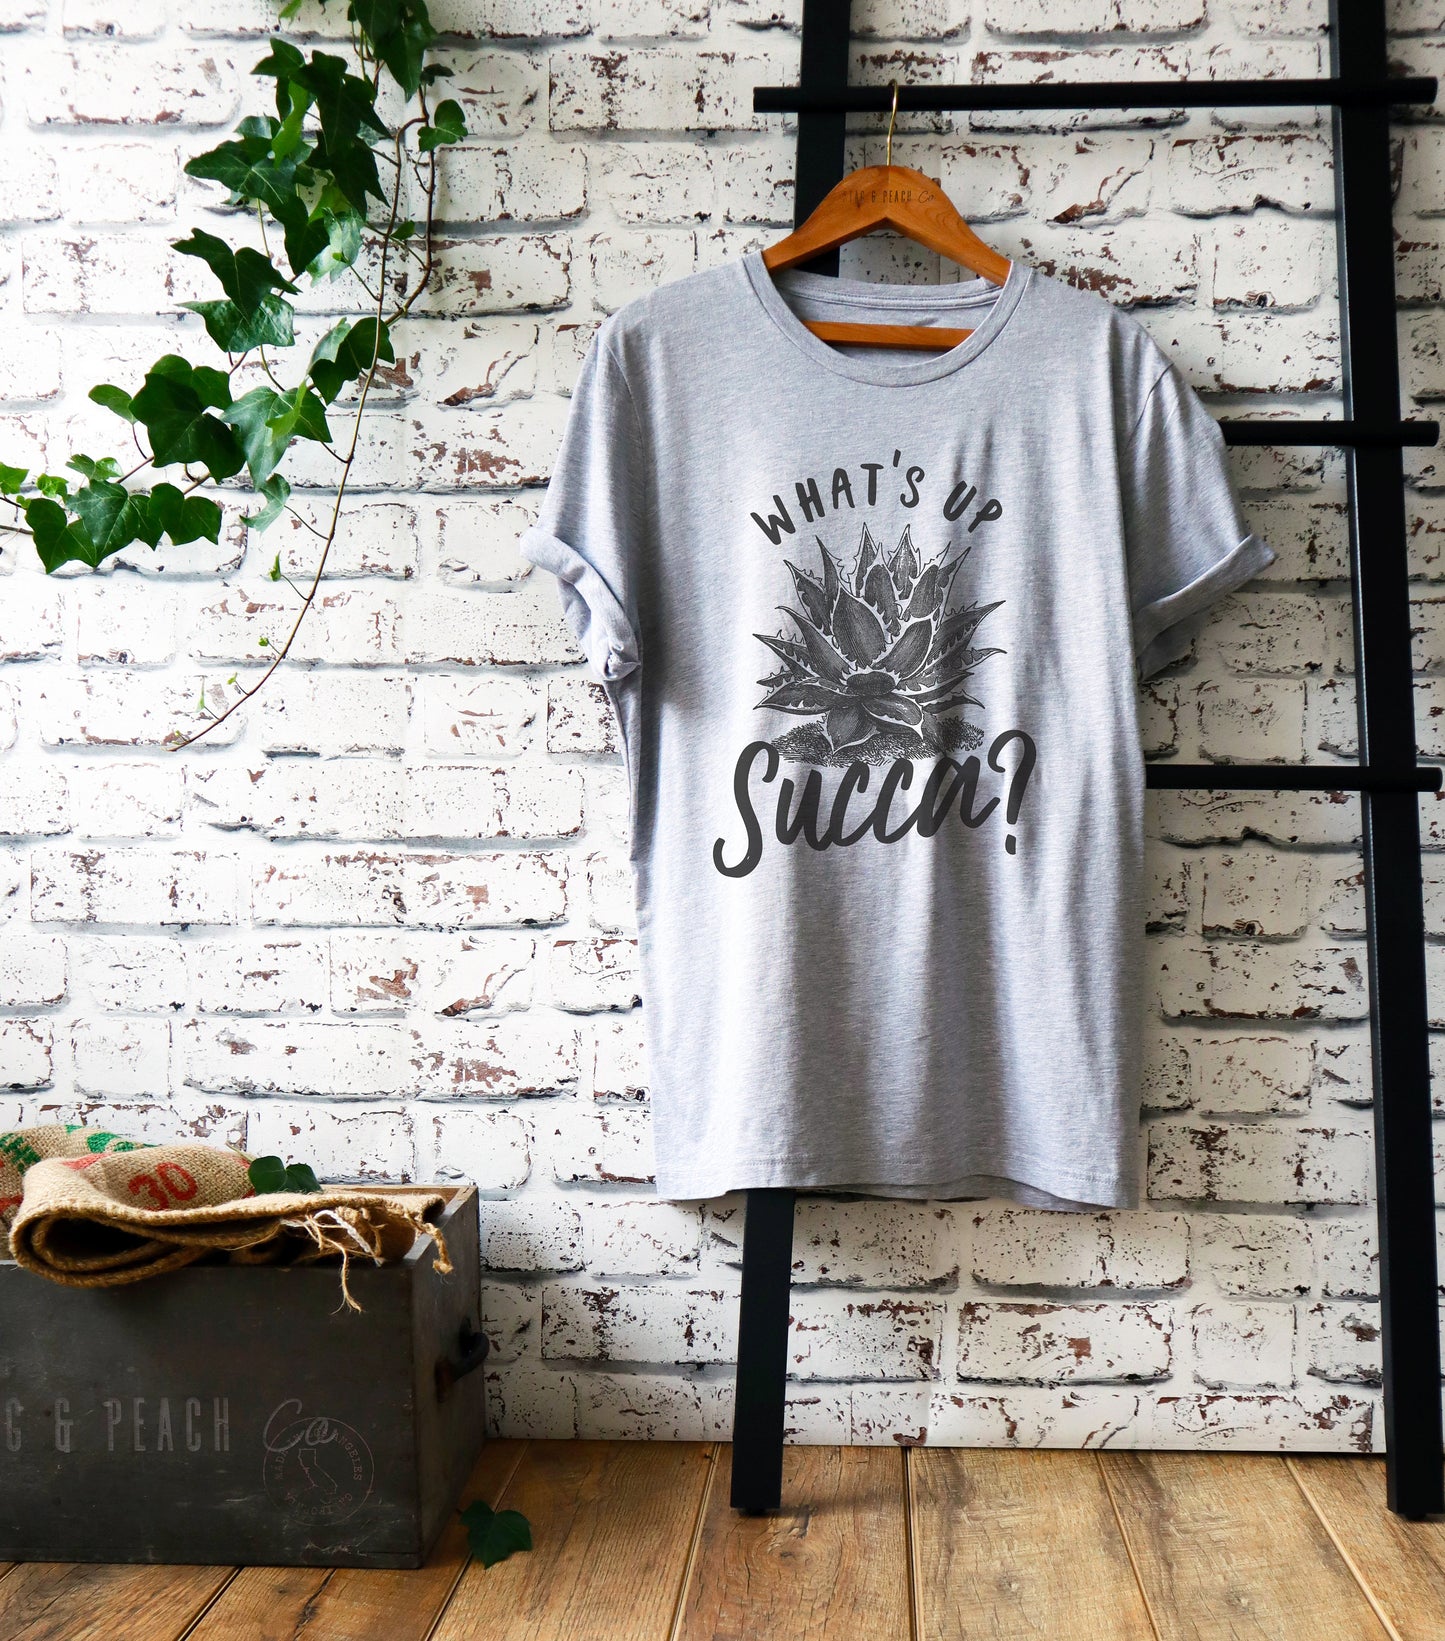 What's Up Succa? Unisex Shirt - Cactus Shirt, Cactus Gift, Succulent Shirt, Succulent Gift, Gardening Shirt, Gardening Gift